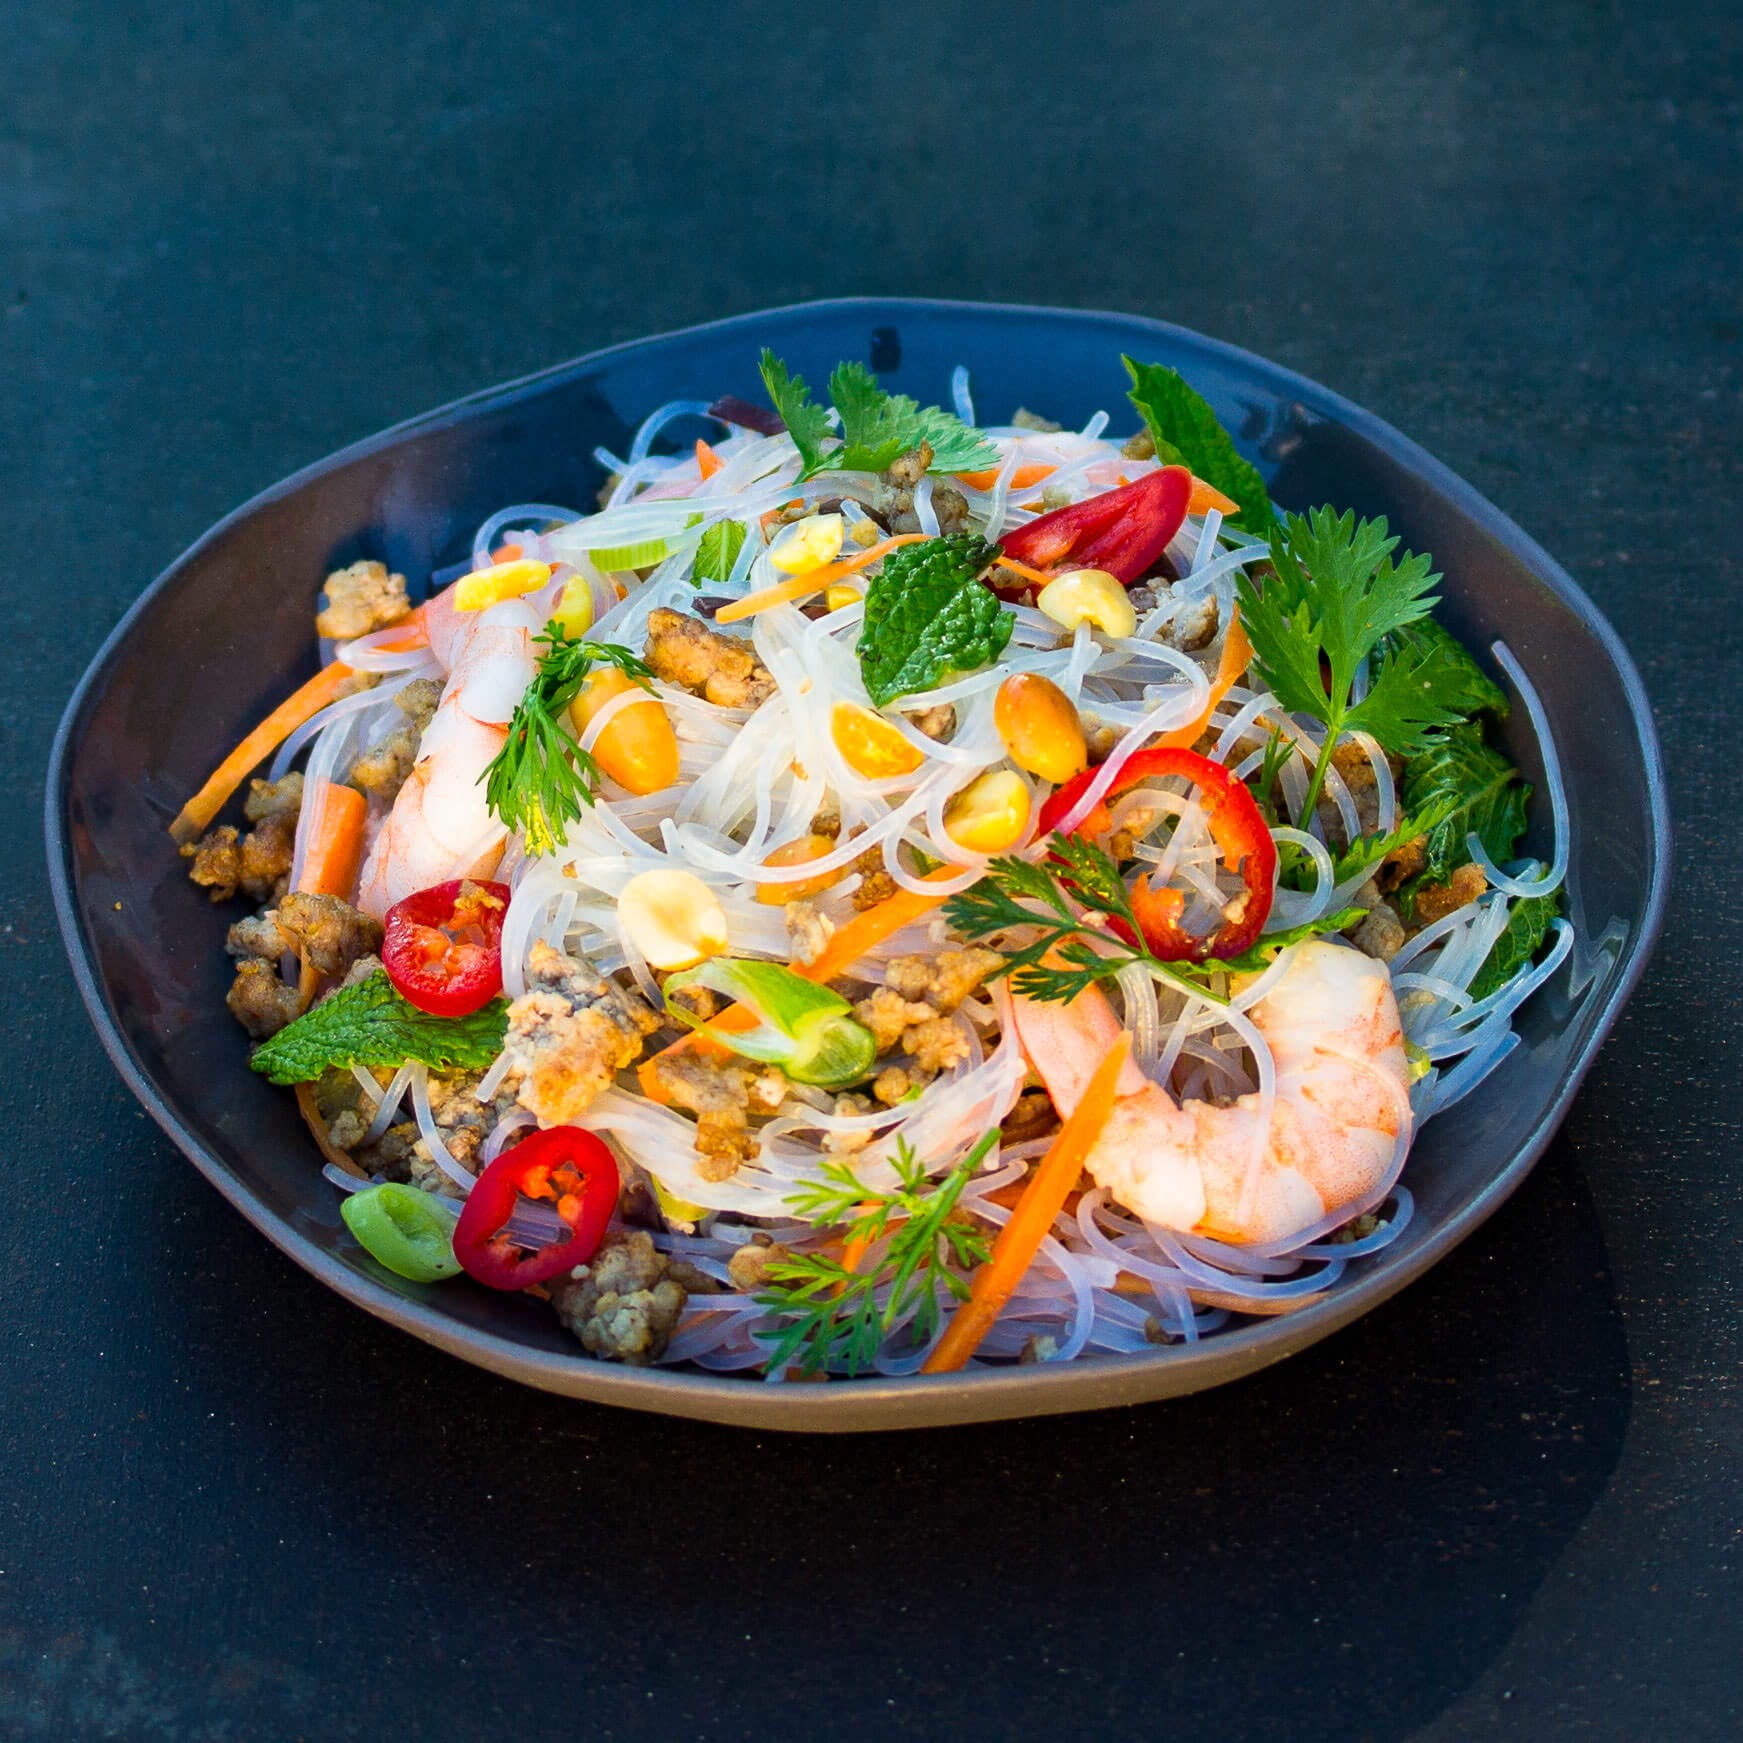 Thailändischer Glasnudel-Salat mit Garnelen, Huhn &amp; Minze | asiastreetfood